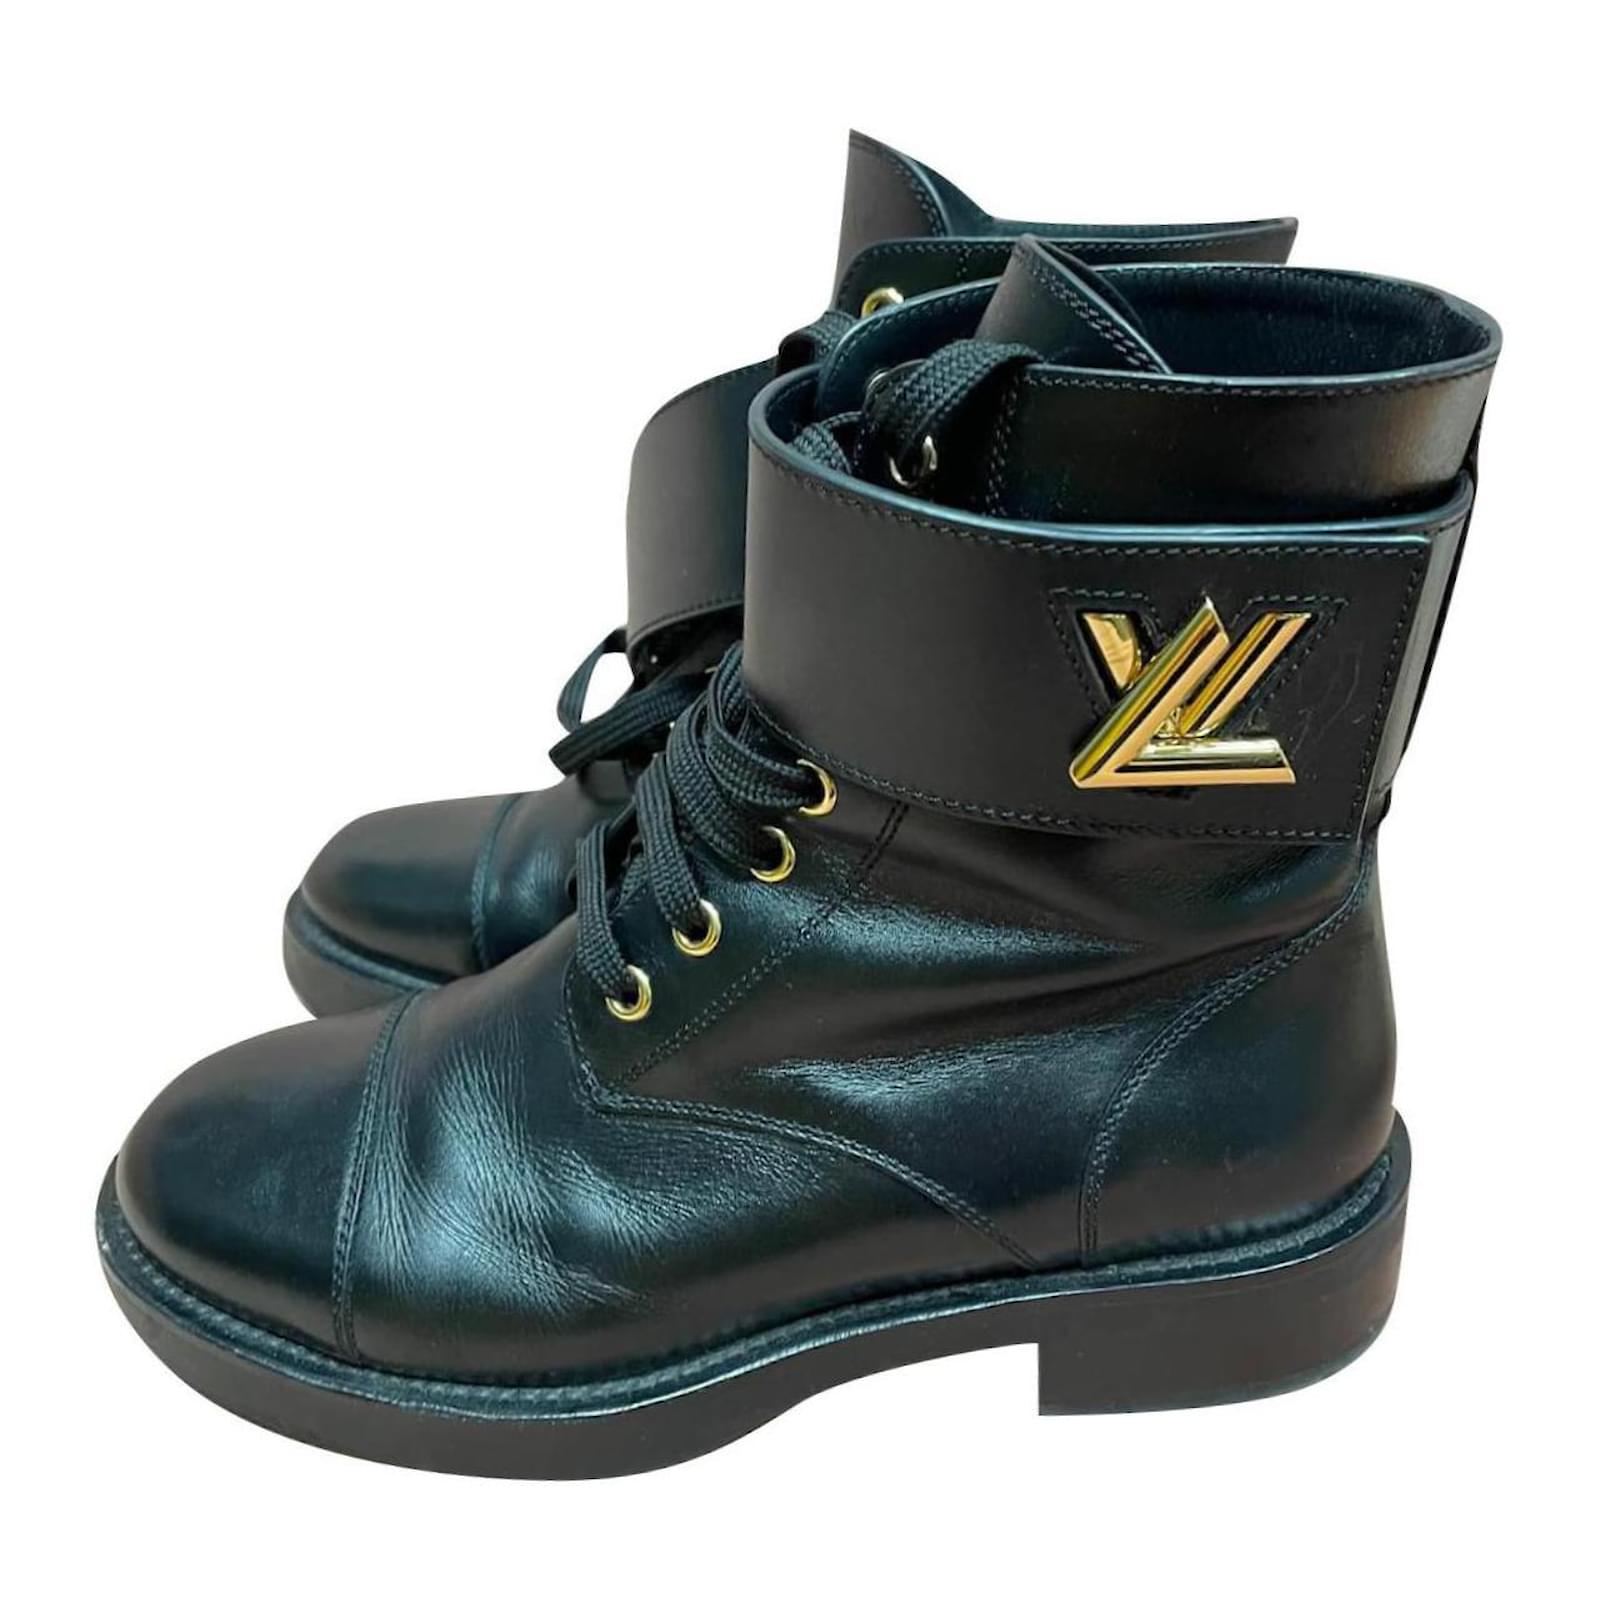 Louis Vuitton Wonderland Ankle Boots